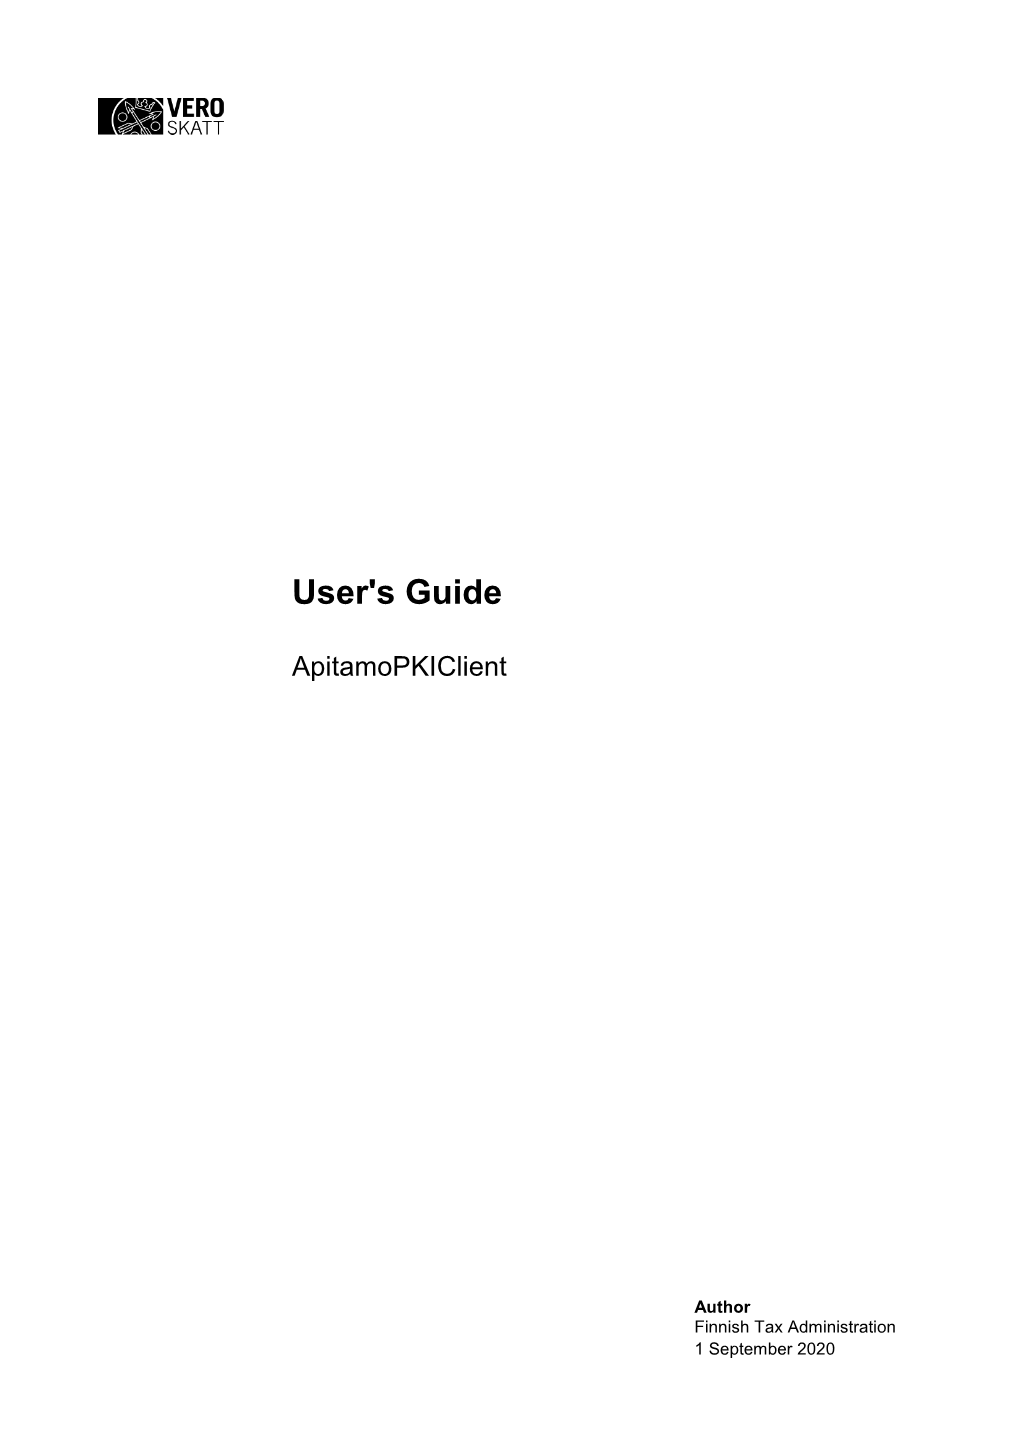 Apitamopkiclient User's Guide 1.1 (Pdf)